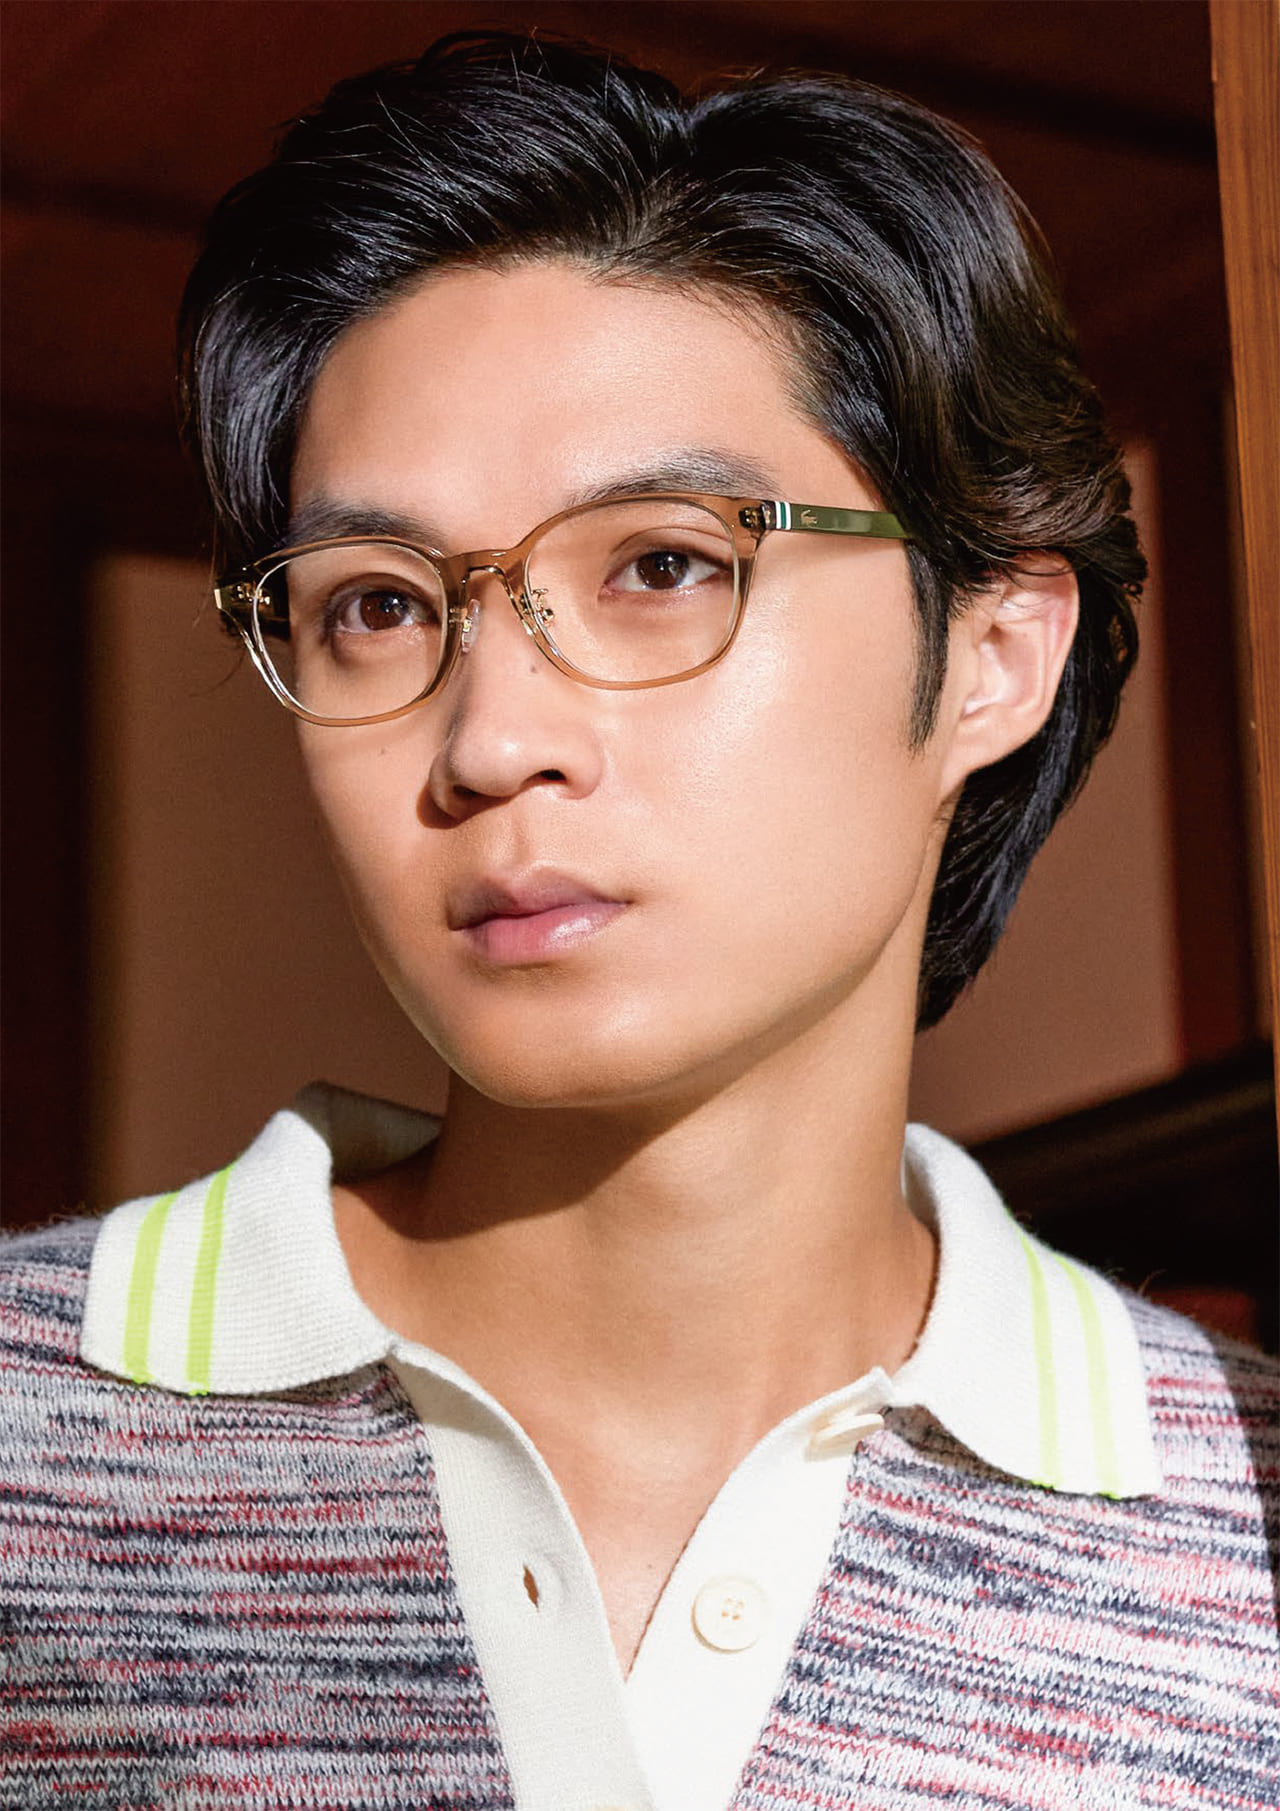 ラコステのメガネを着用する俳優の磯村勇斗さん